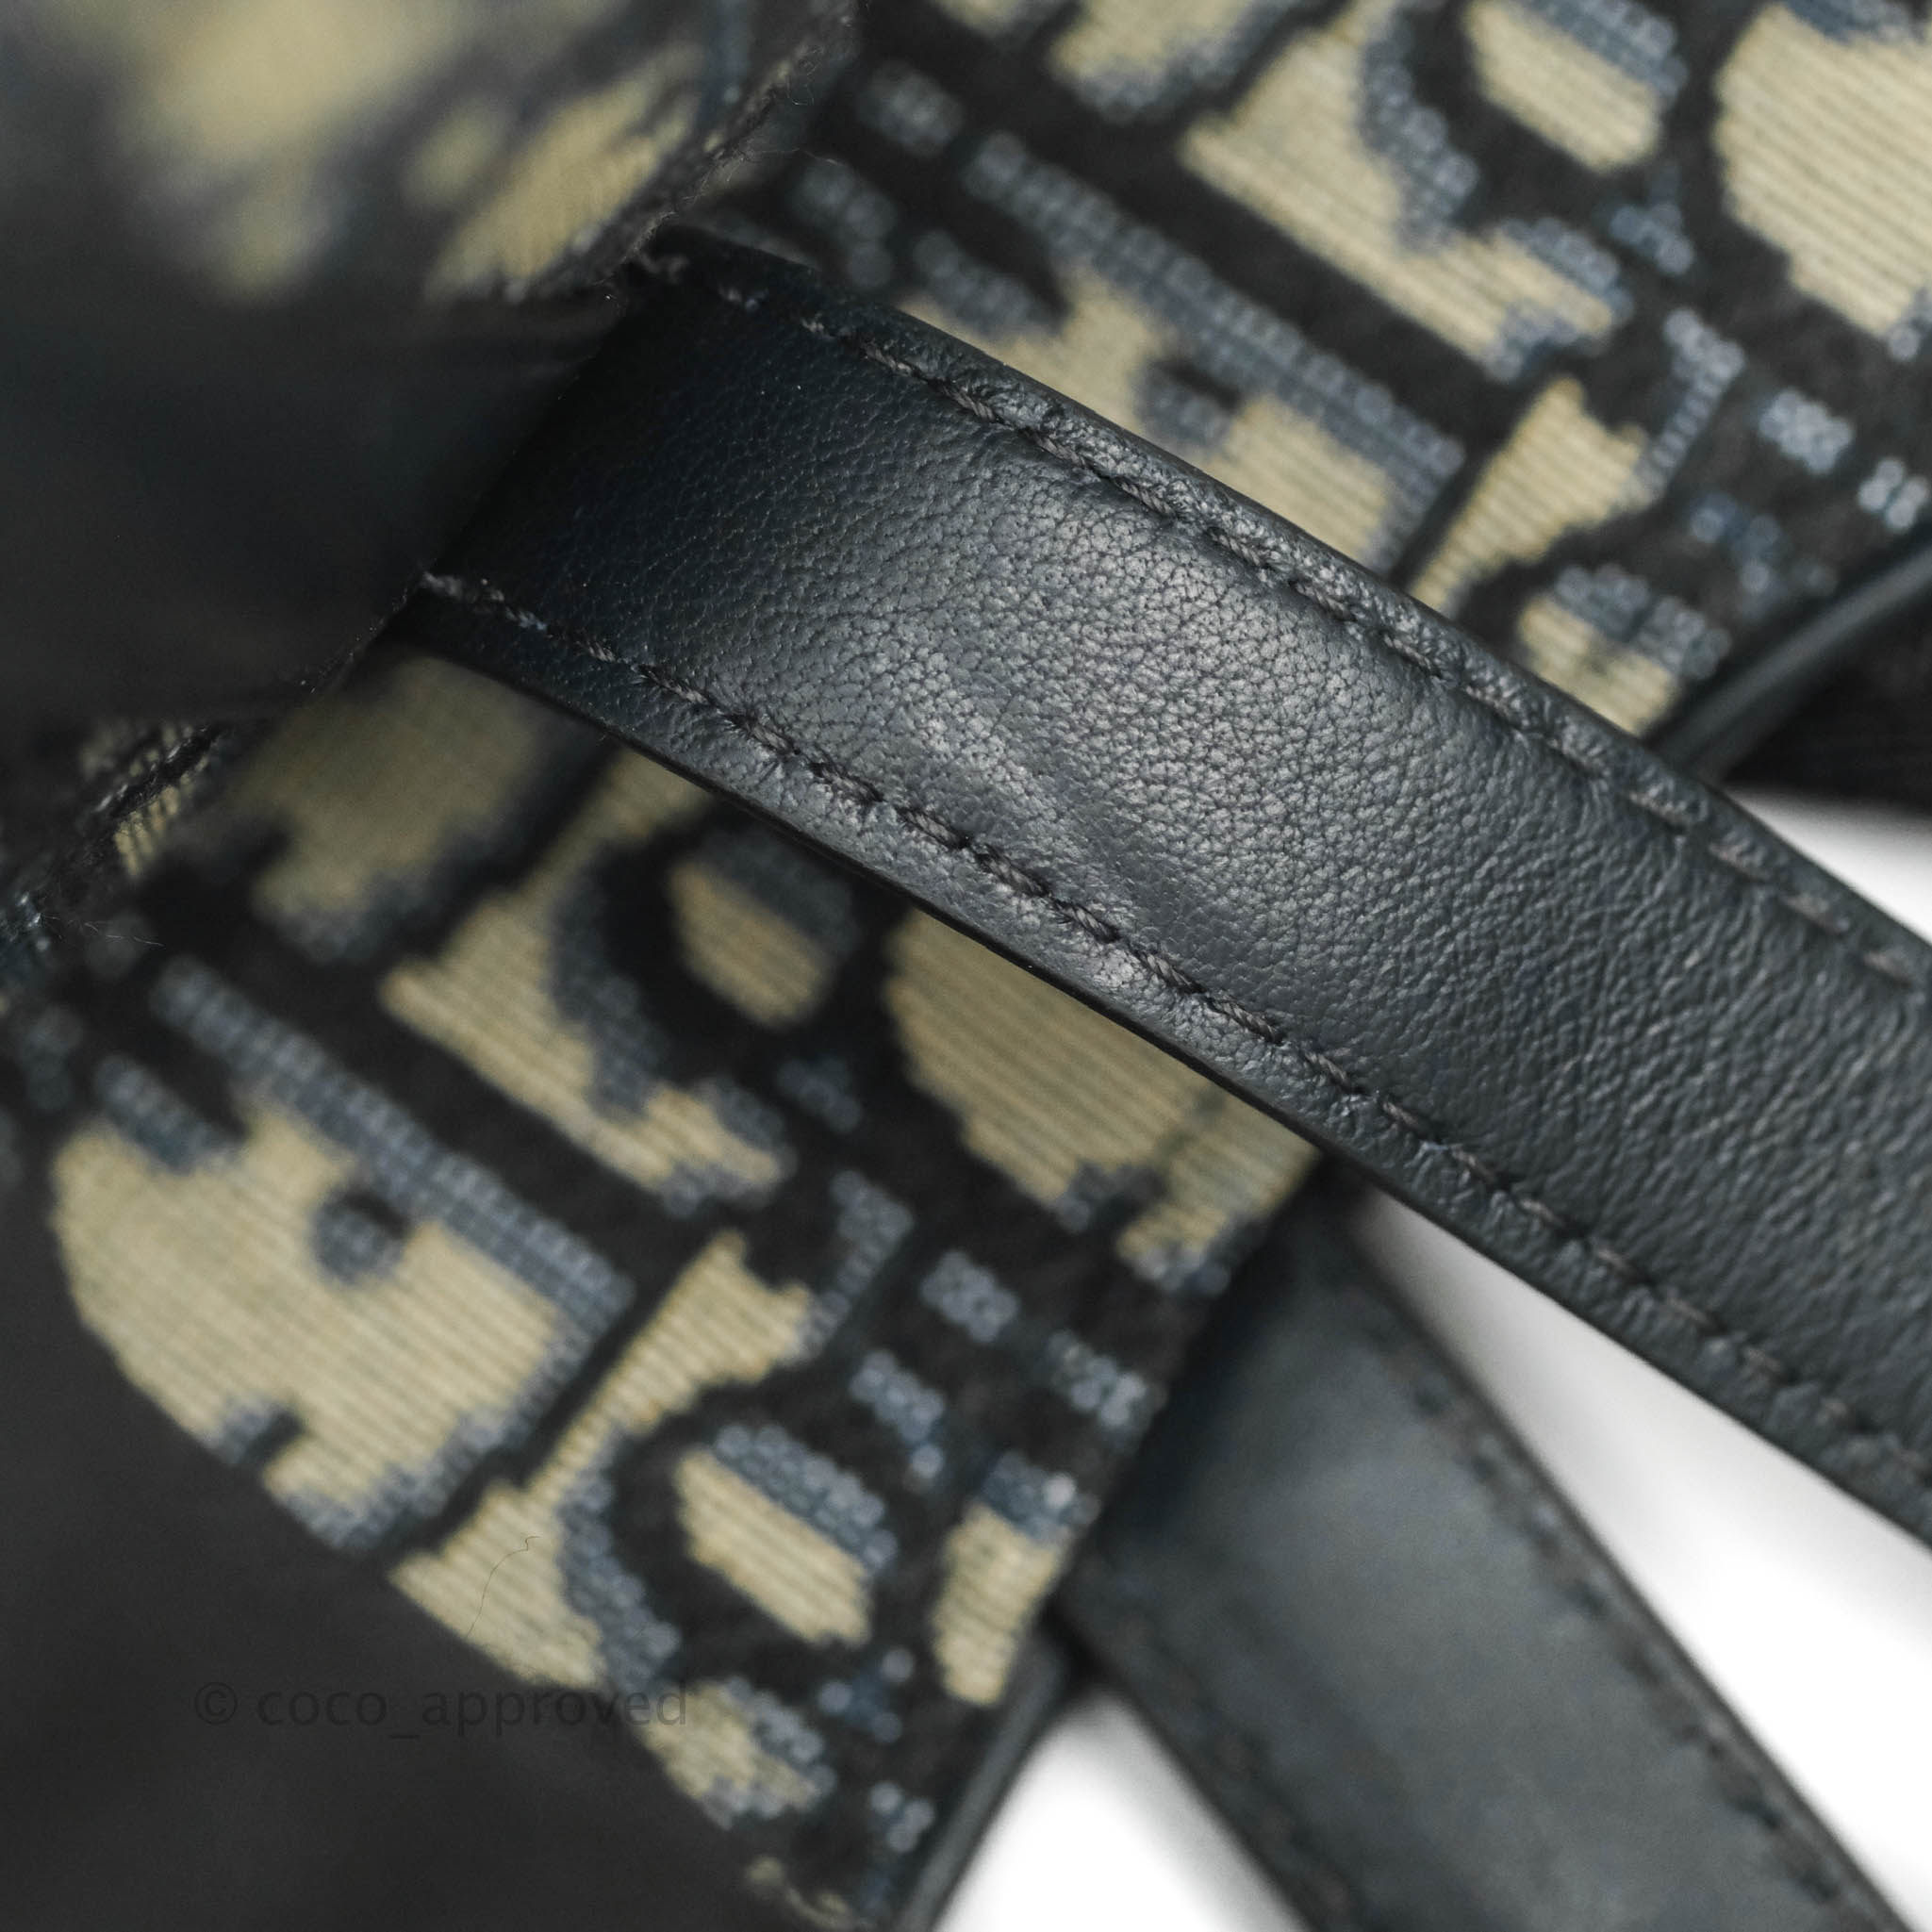 Christian Dior Oblique Saddle Belt Bag Blue | The ReLux